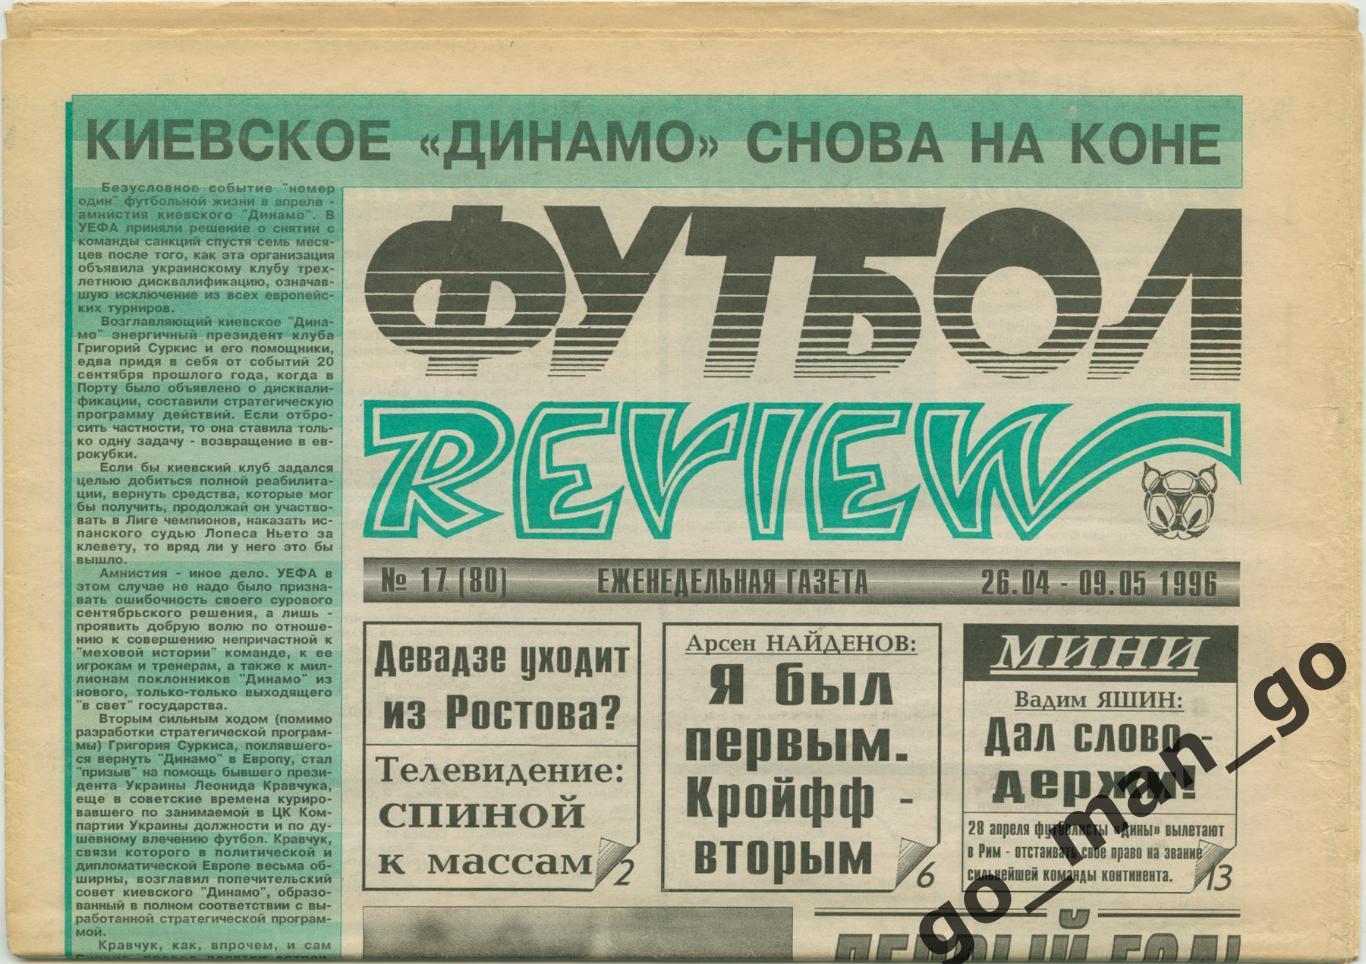 Еженедельник Футбол-Review (Футбол-Ревю), 26.04-09.05.1996, № 17.